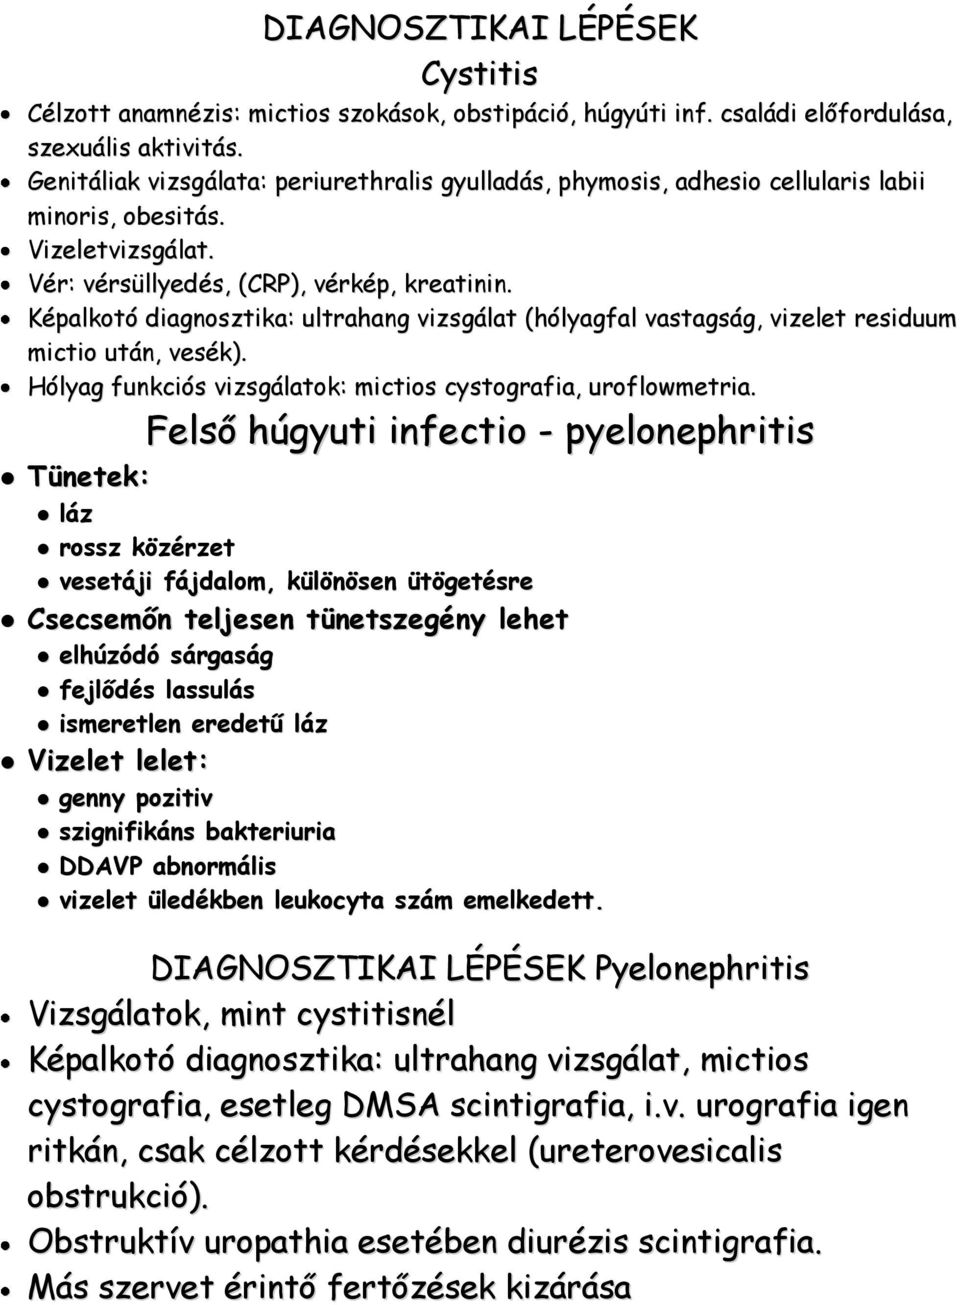 Képalkotó diagnosztika: ultrahang vizsgálat (hólyagfal vastagság, vizelet residuum mictio után, vesék). Hólyag funkciós vizsgálatok: mictios cystografia, uroflowmetria.